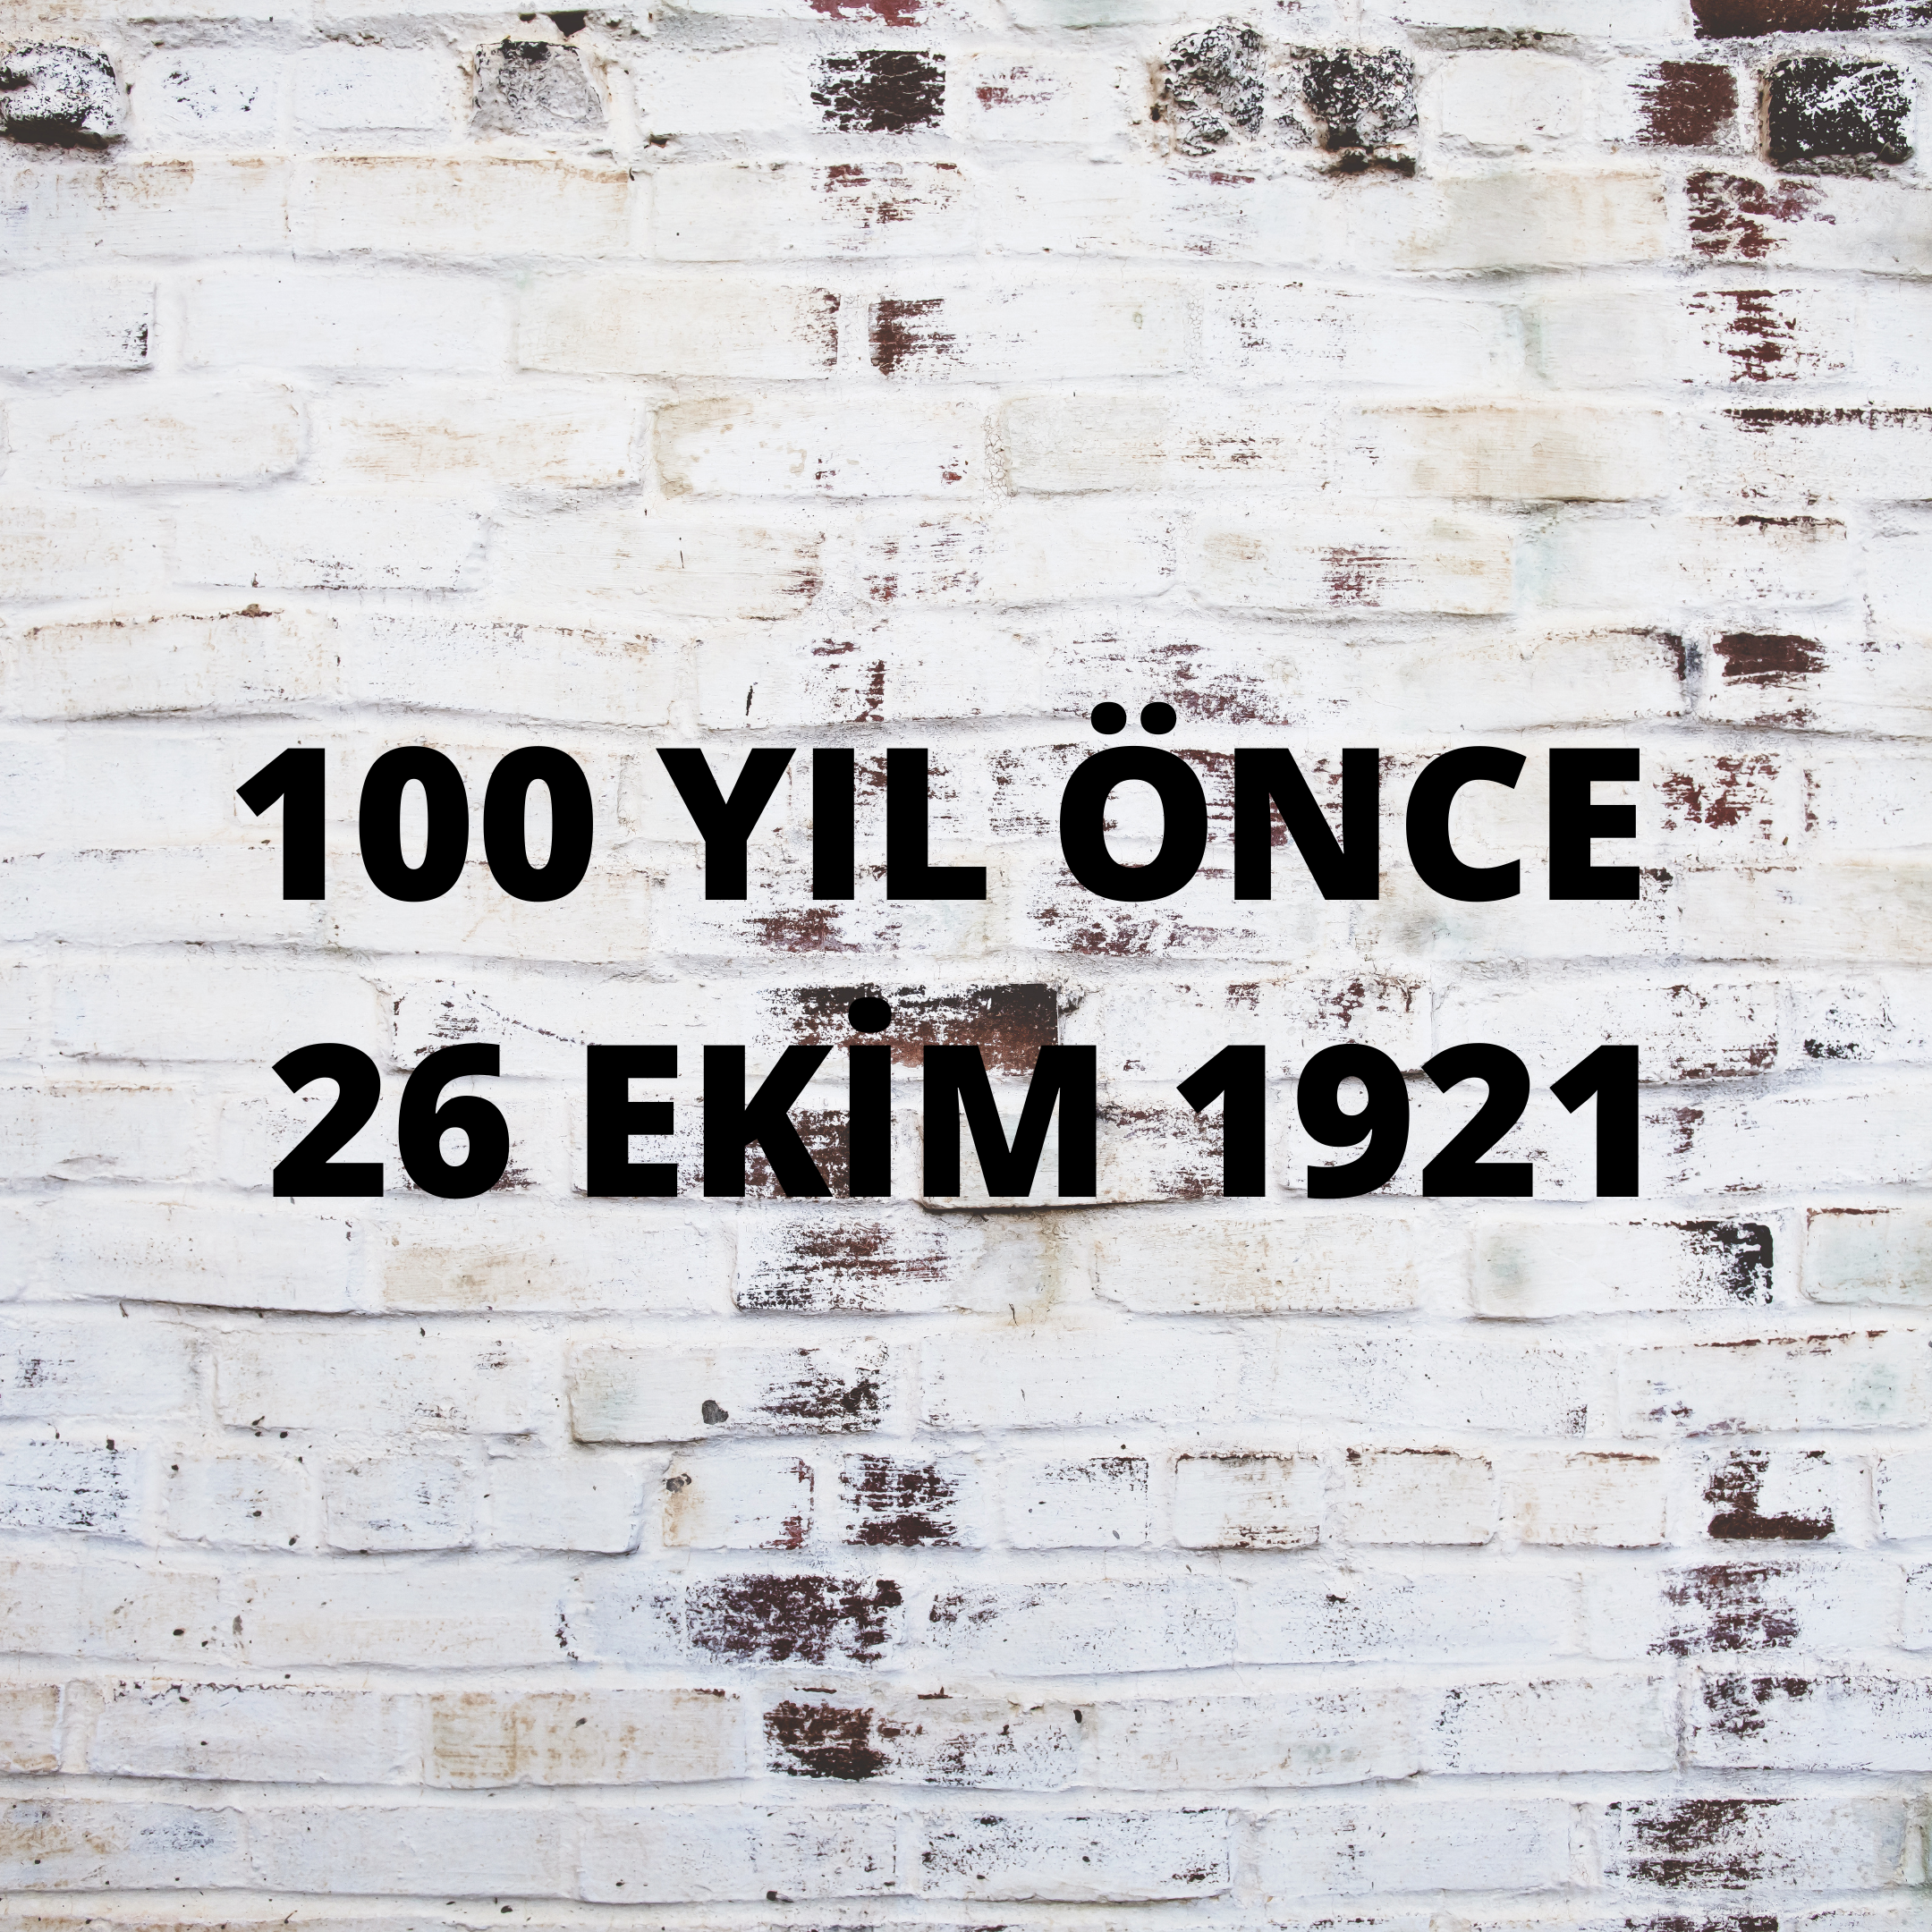 100 YIL ÖNCE 26 EKİM 1921